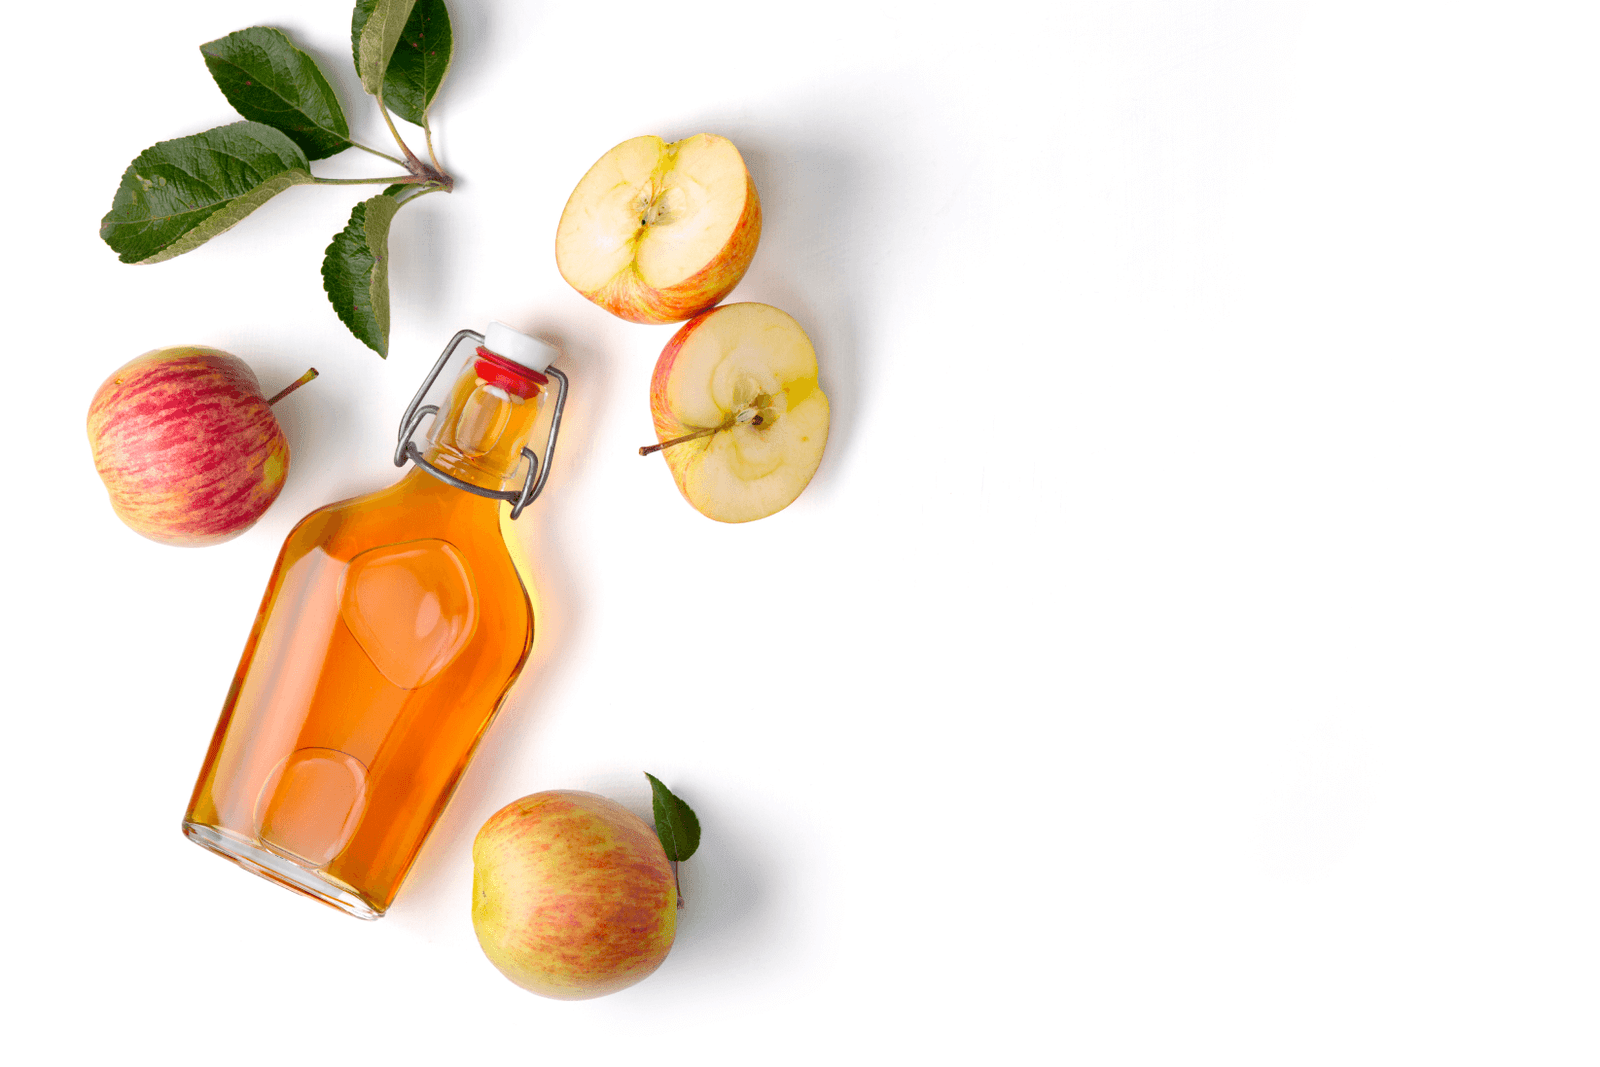 BestShape - Apple Cider Vinegar Capsule Benefits